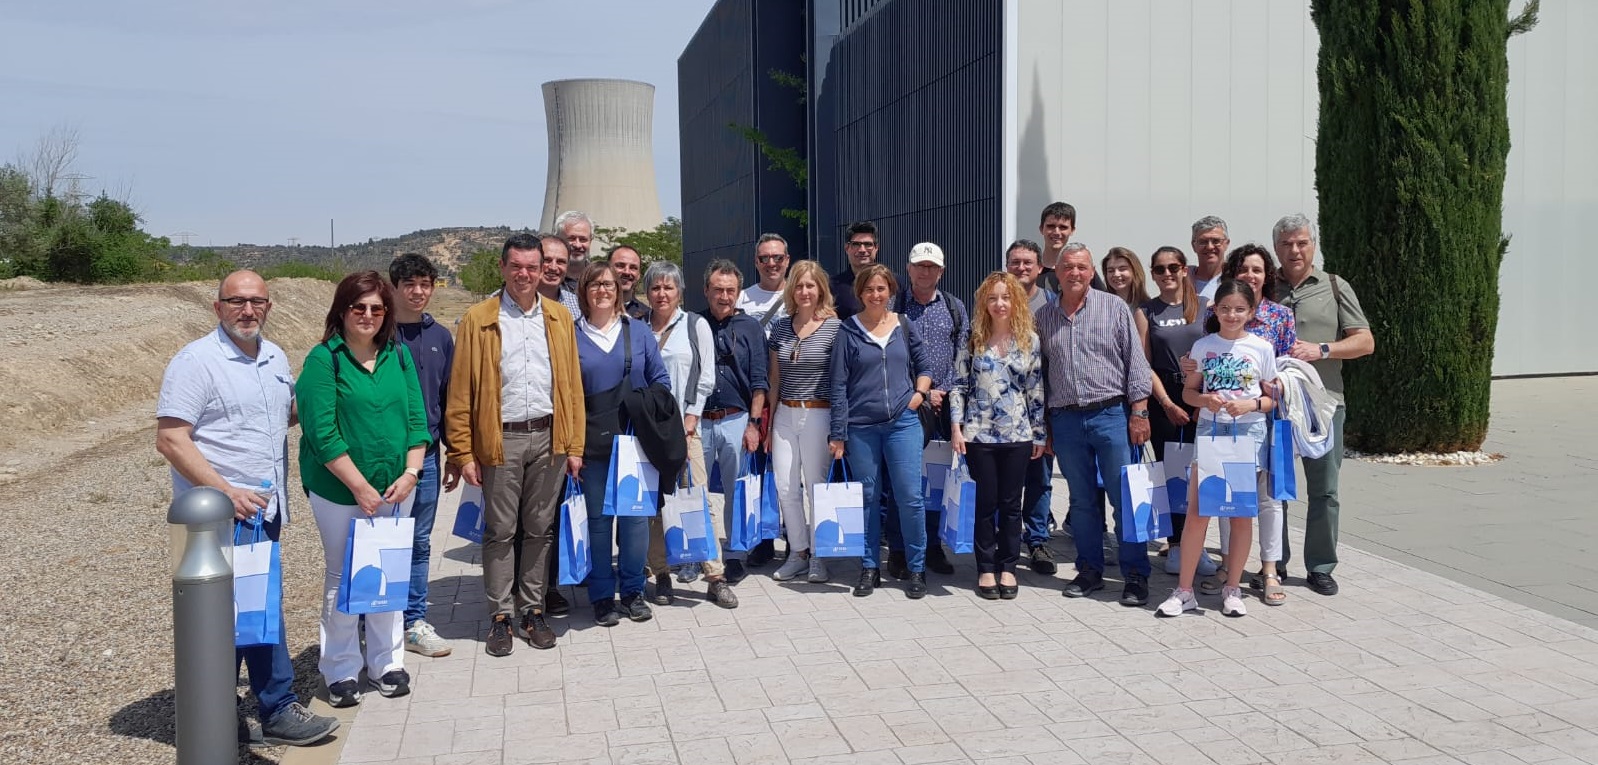 Visita Tècnica a la Central Nuclear d’Ascó